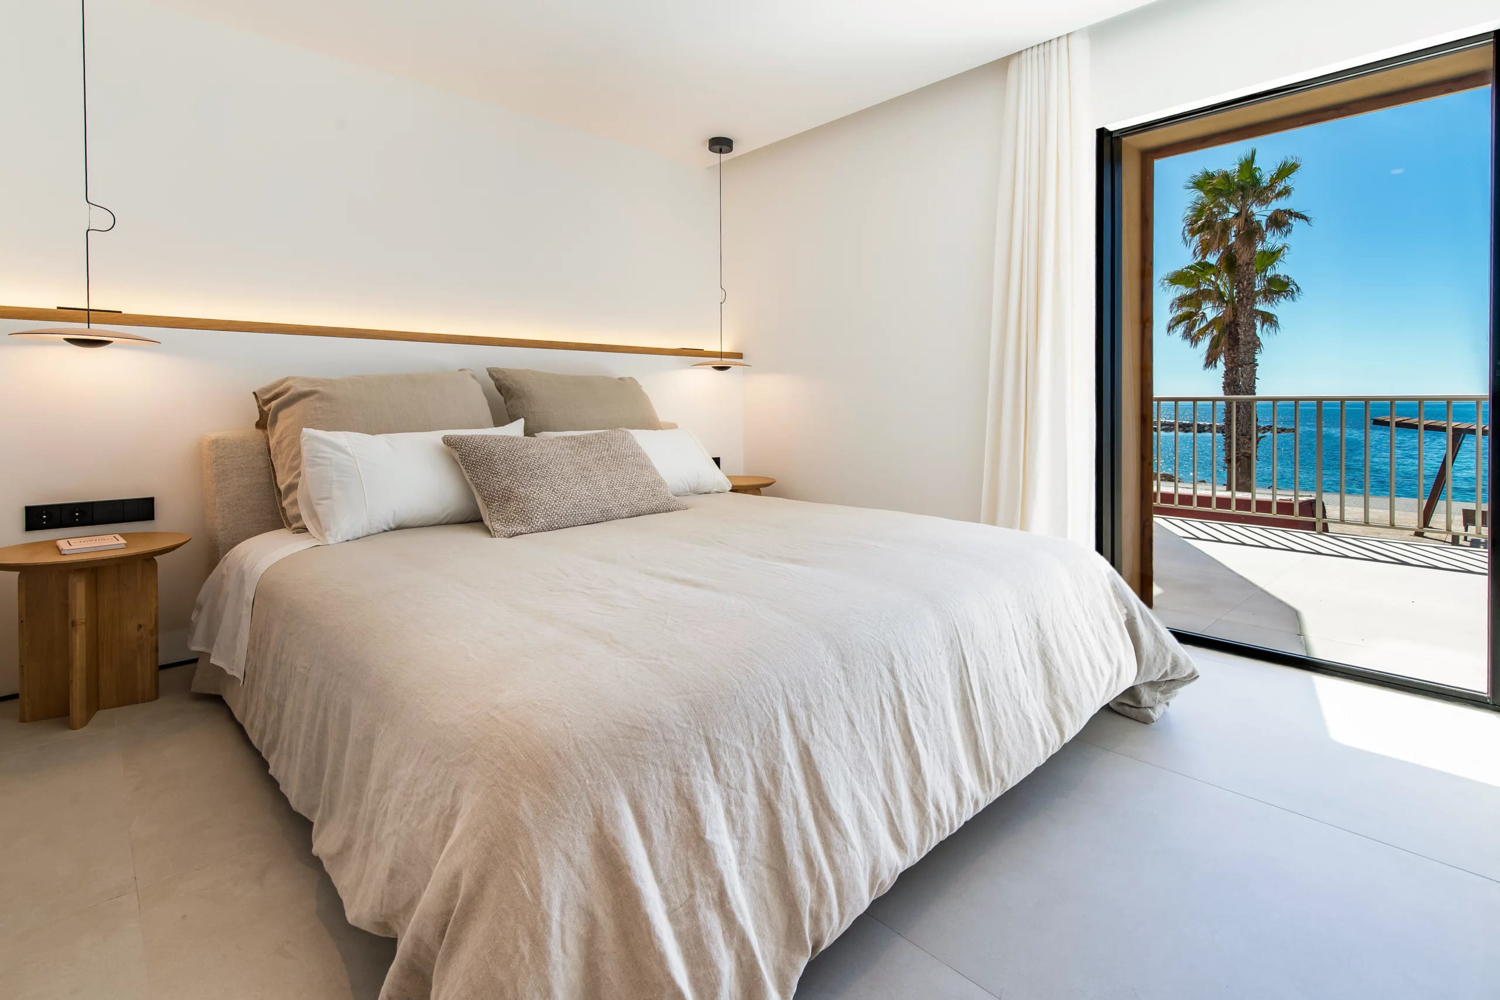 Exquisite Wohnung mit unvergleichlichem Blick auf die Bucht in Portixol